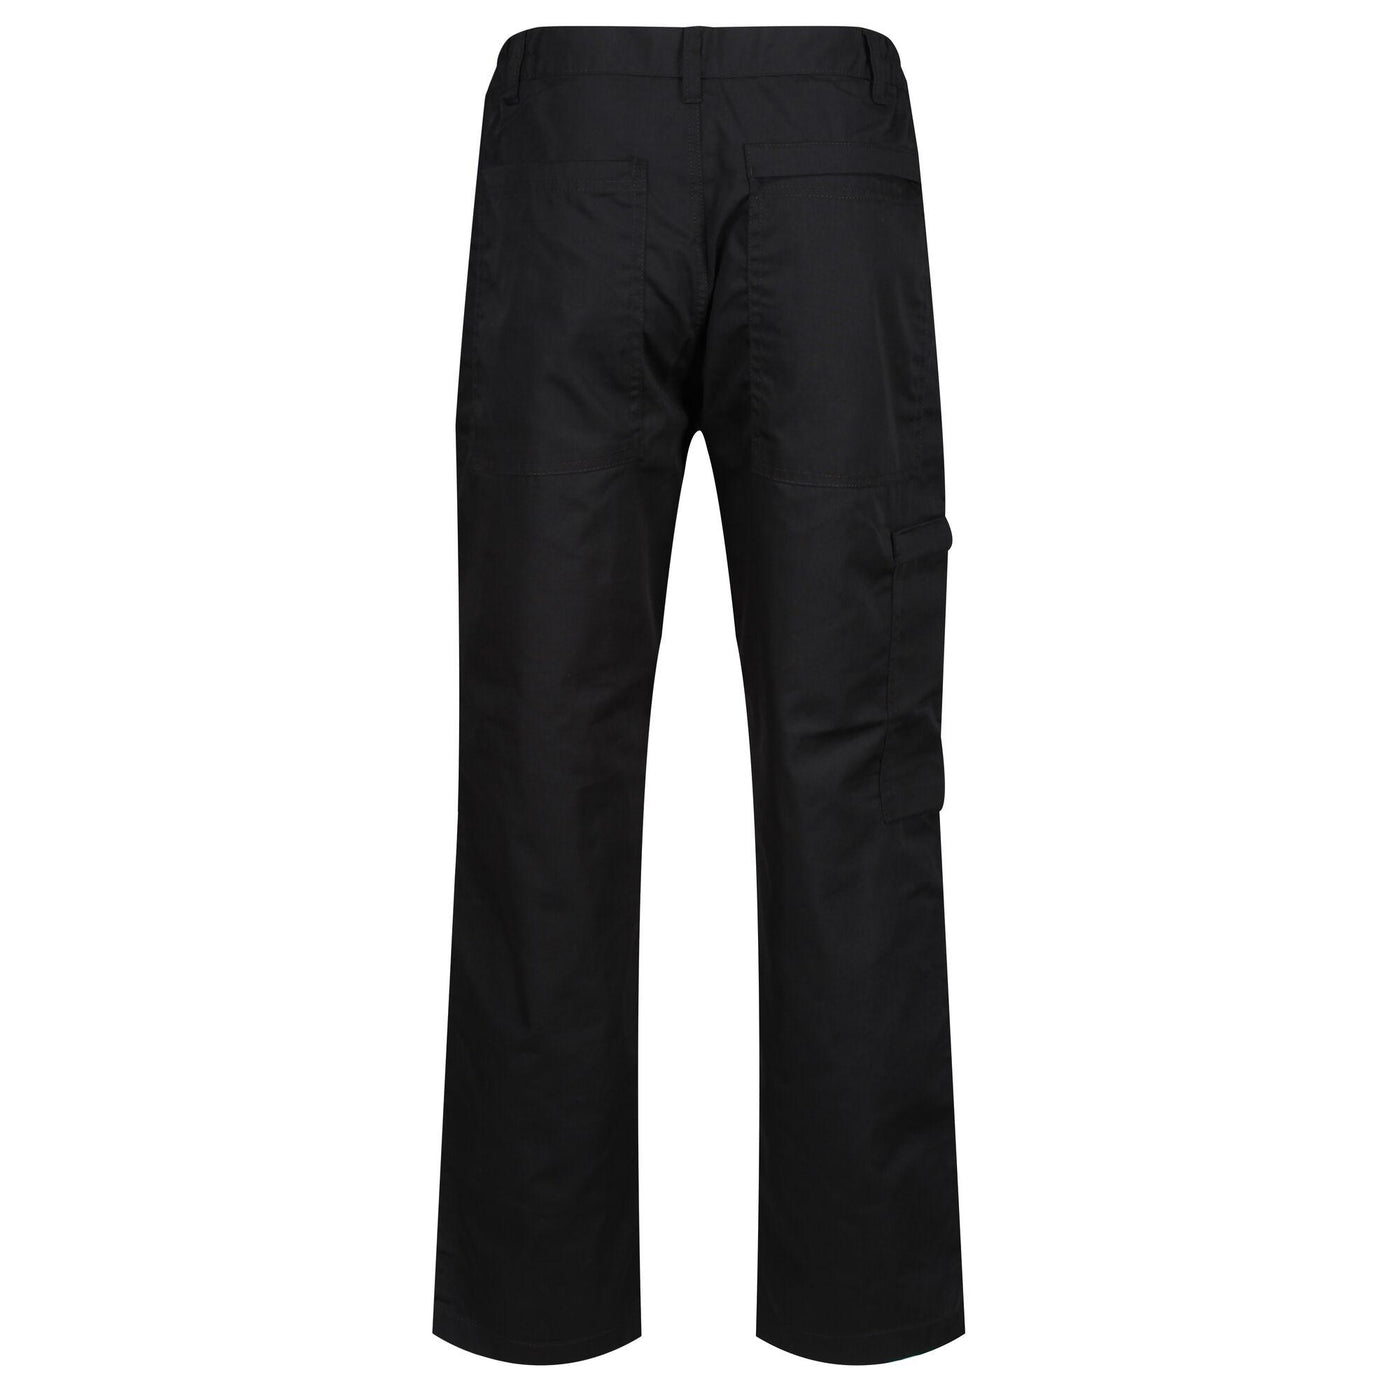 Regatta Professional Mens Action Trousers Black 2#colour_black